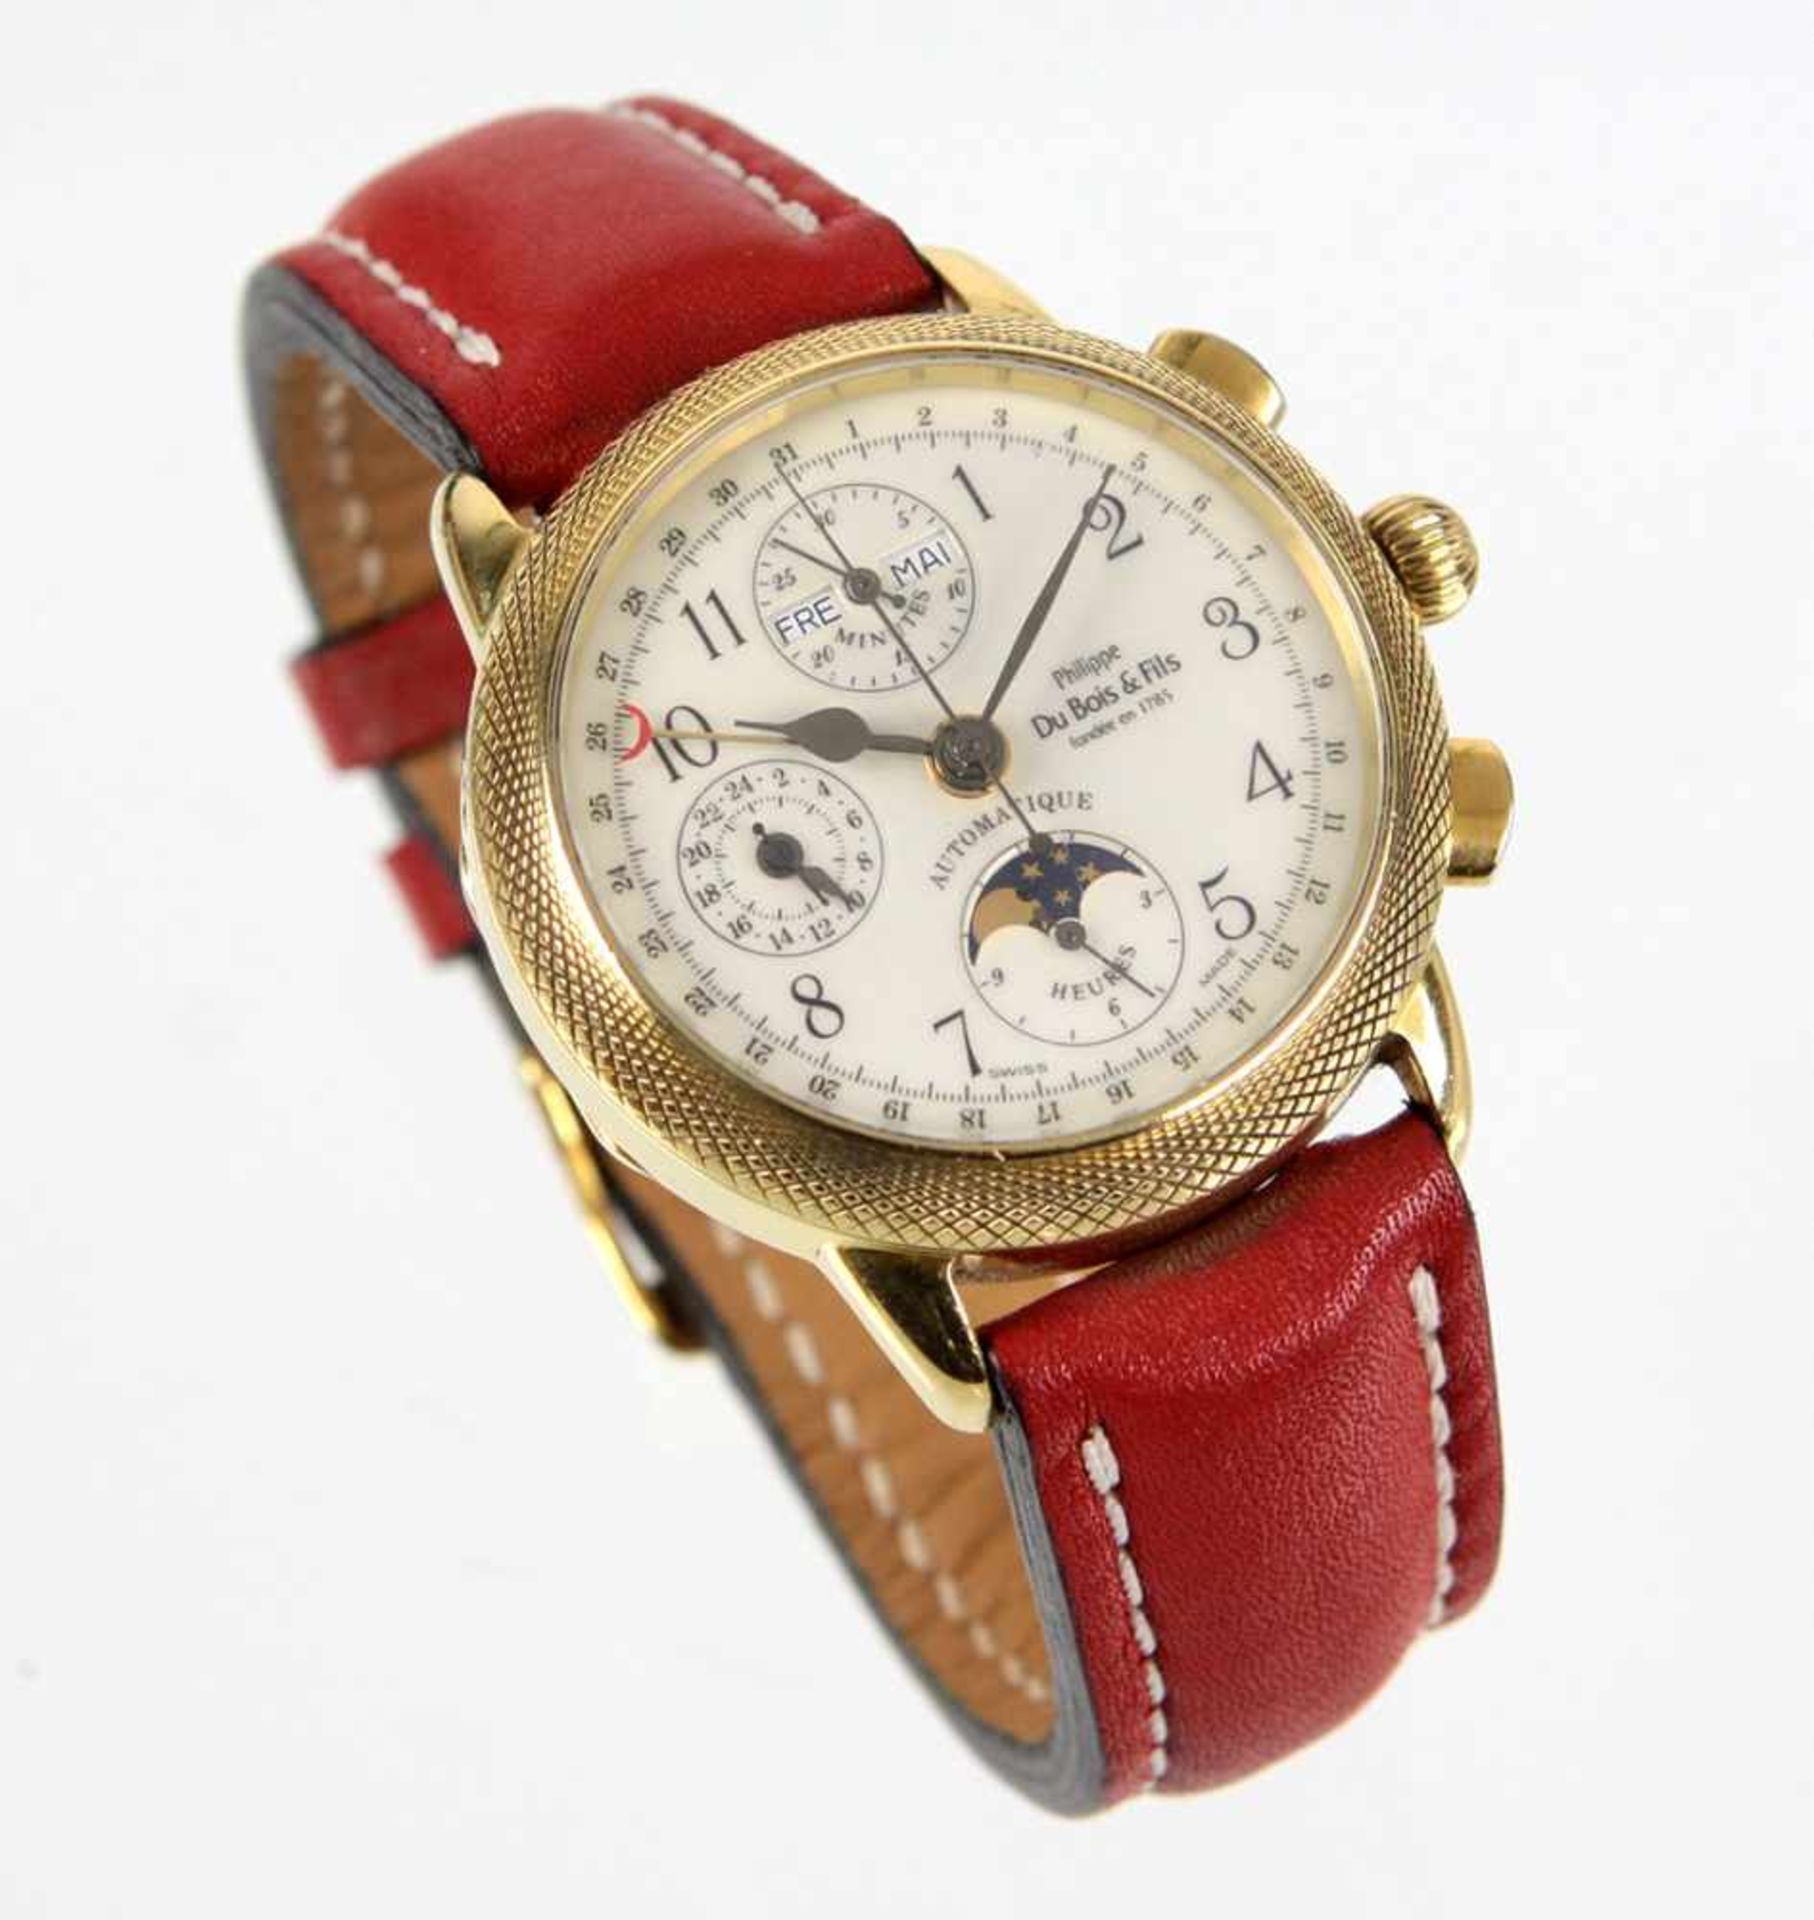 Herren Armbanduhr - GG 750rundes mit feiner Guillochierung verziertes Uhrengehäuse in Gelbgold